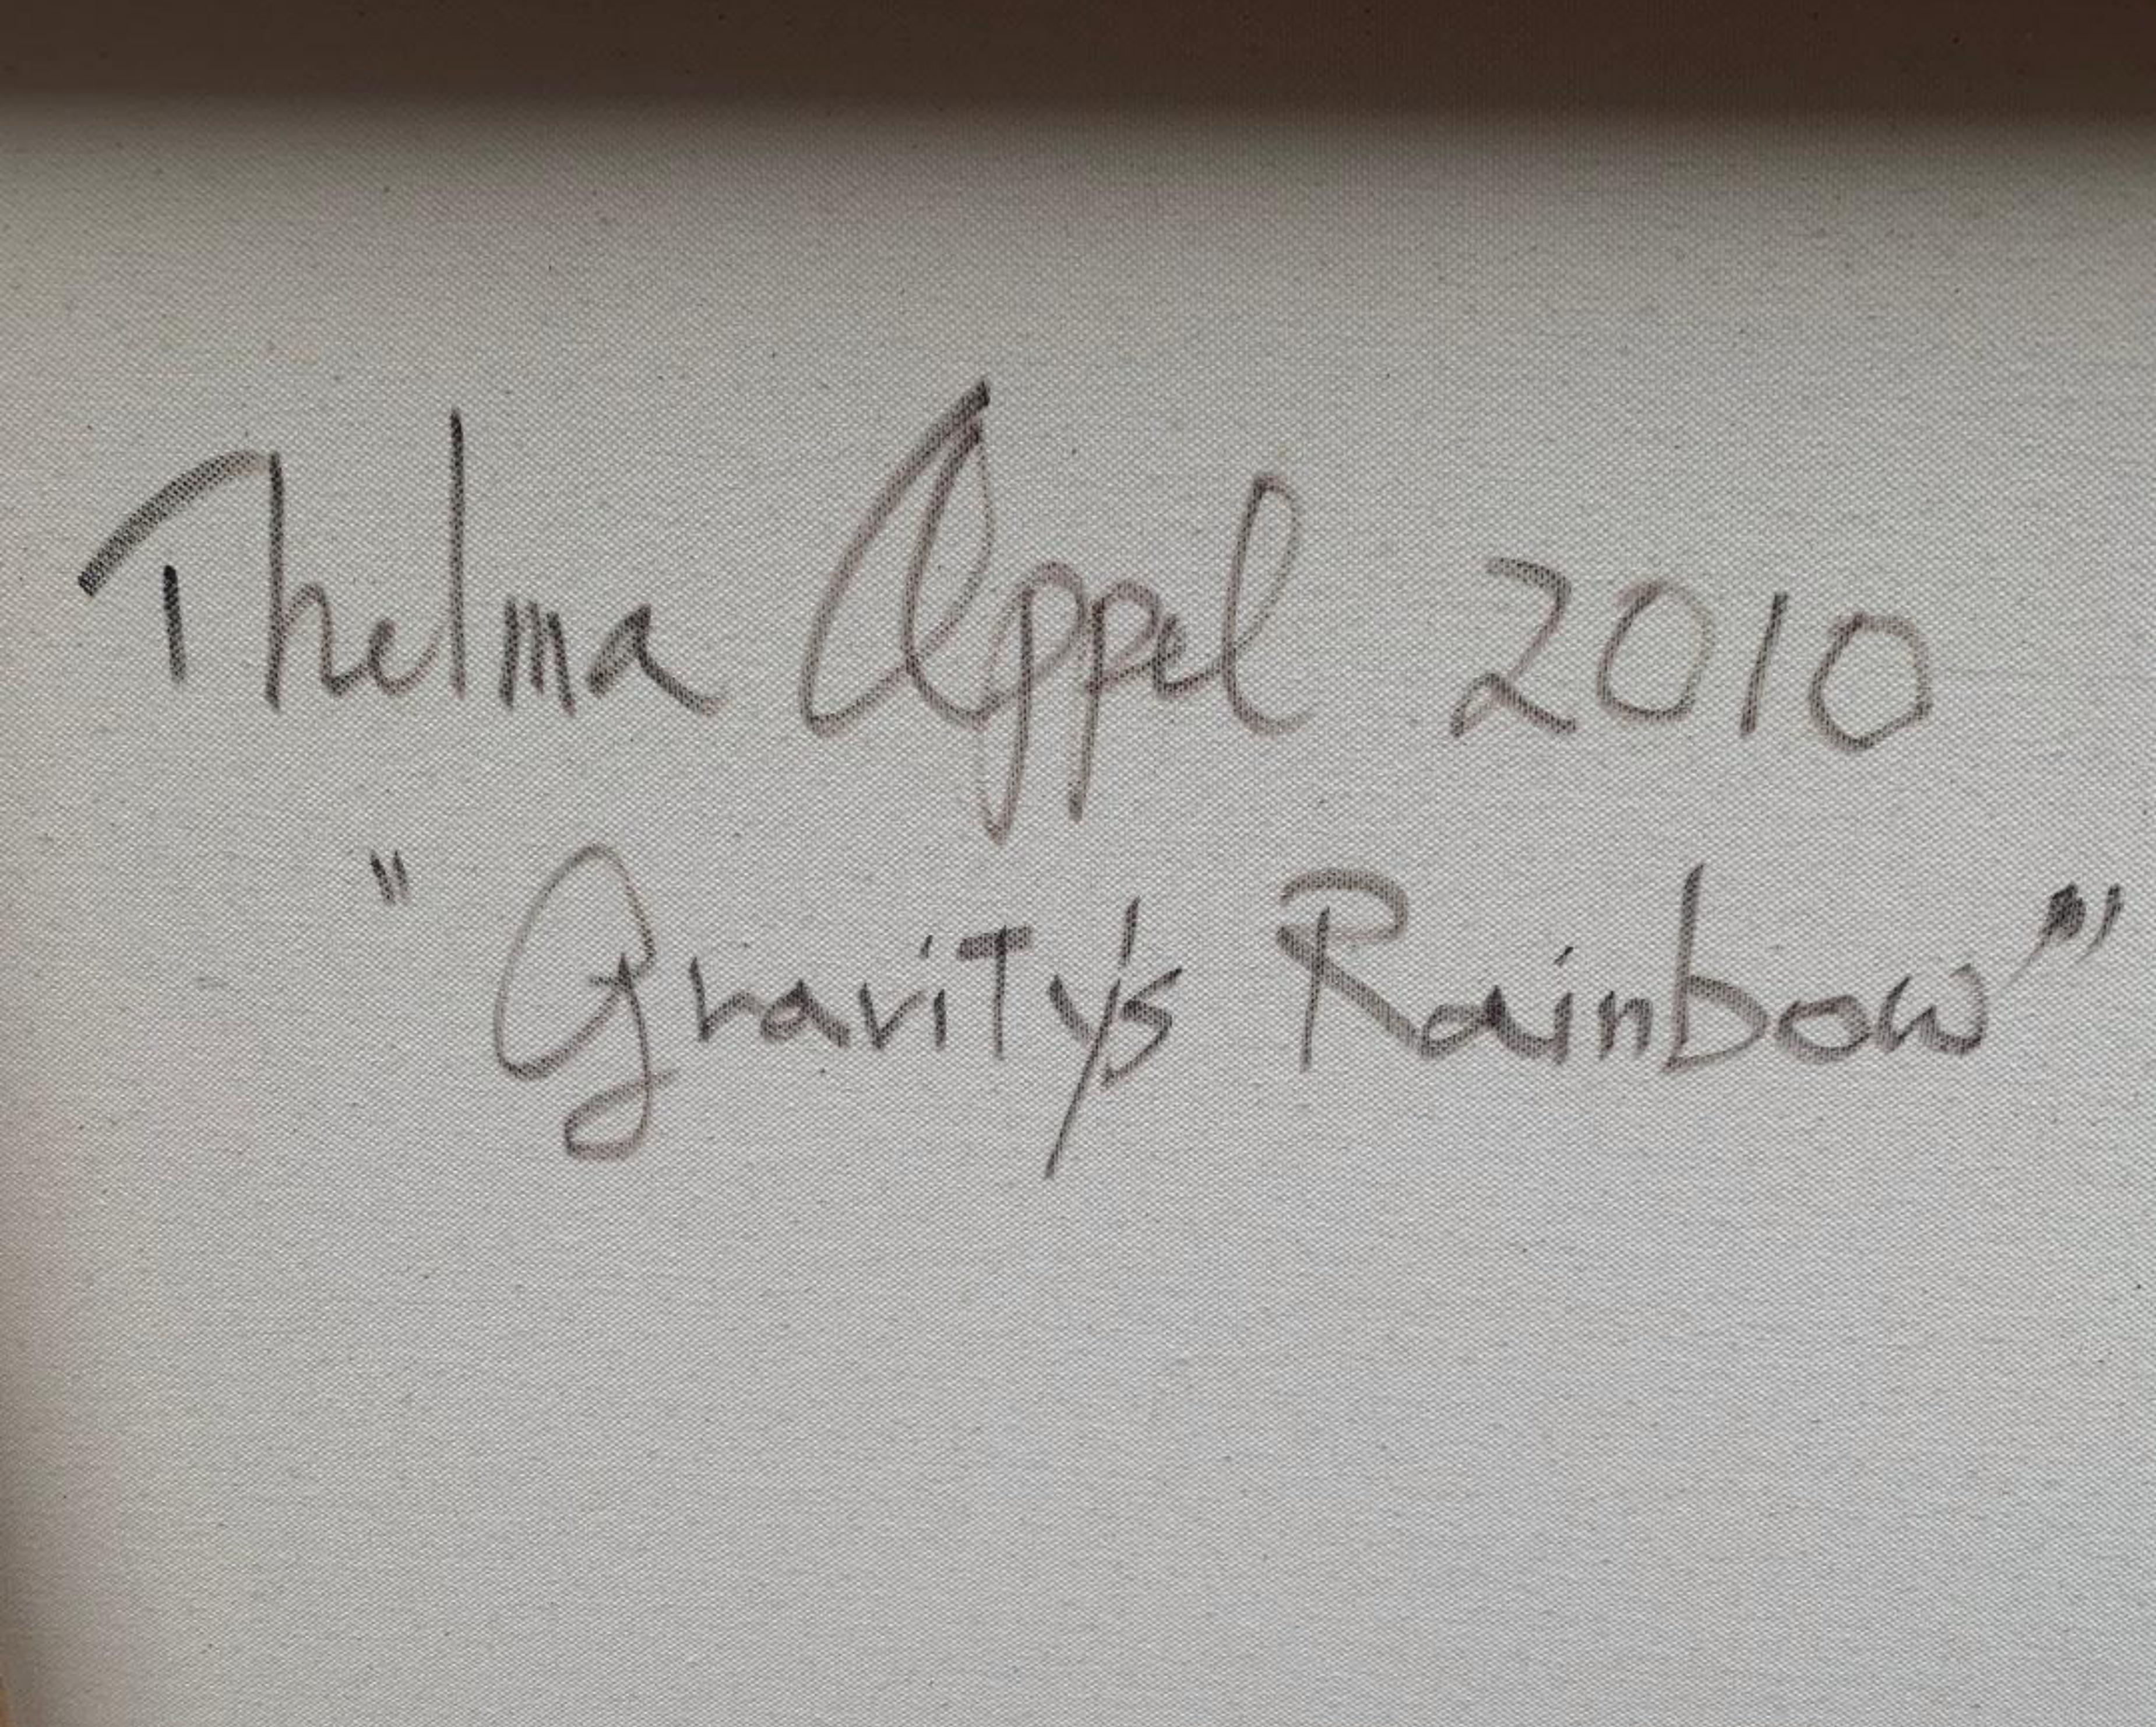 Gravity's Rainbow, peinture sur toile unique signée de la célèbre artiste féminine - Contemporain Painting par Thelma Appel